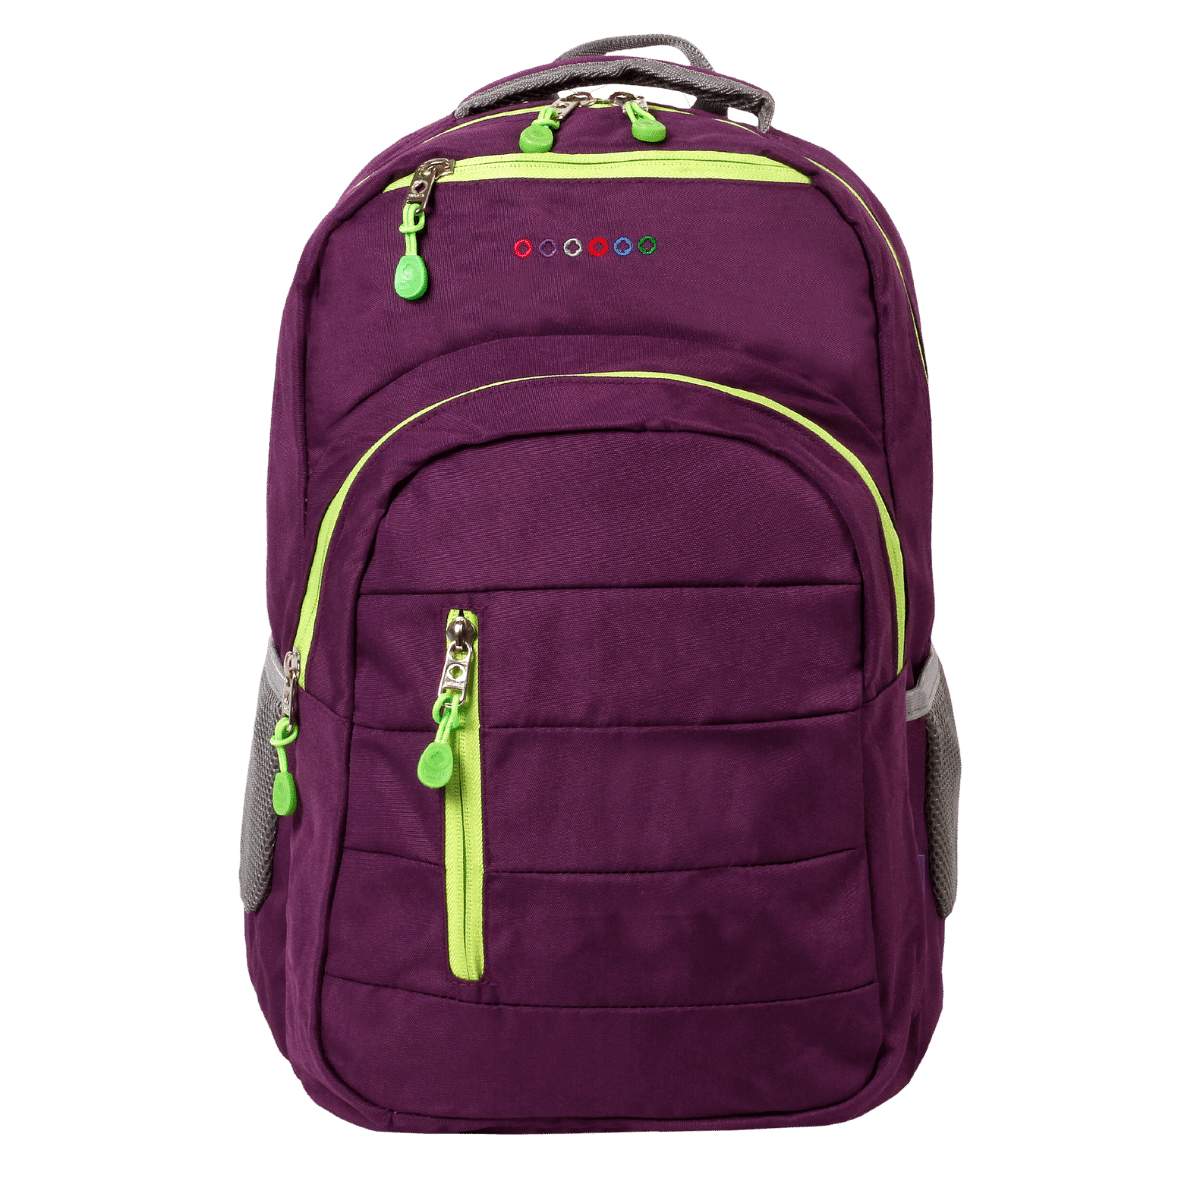 Carmen 16 Inch Laptop Backpack - JWorldstore-BACKPACK-J WORLD,